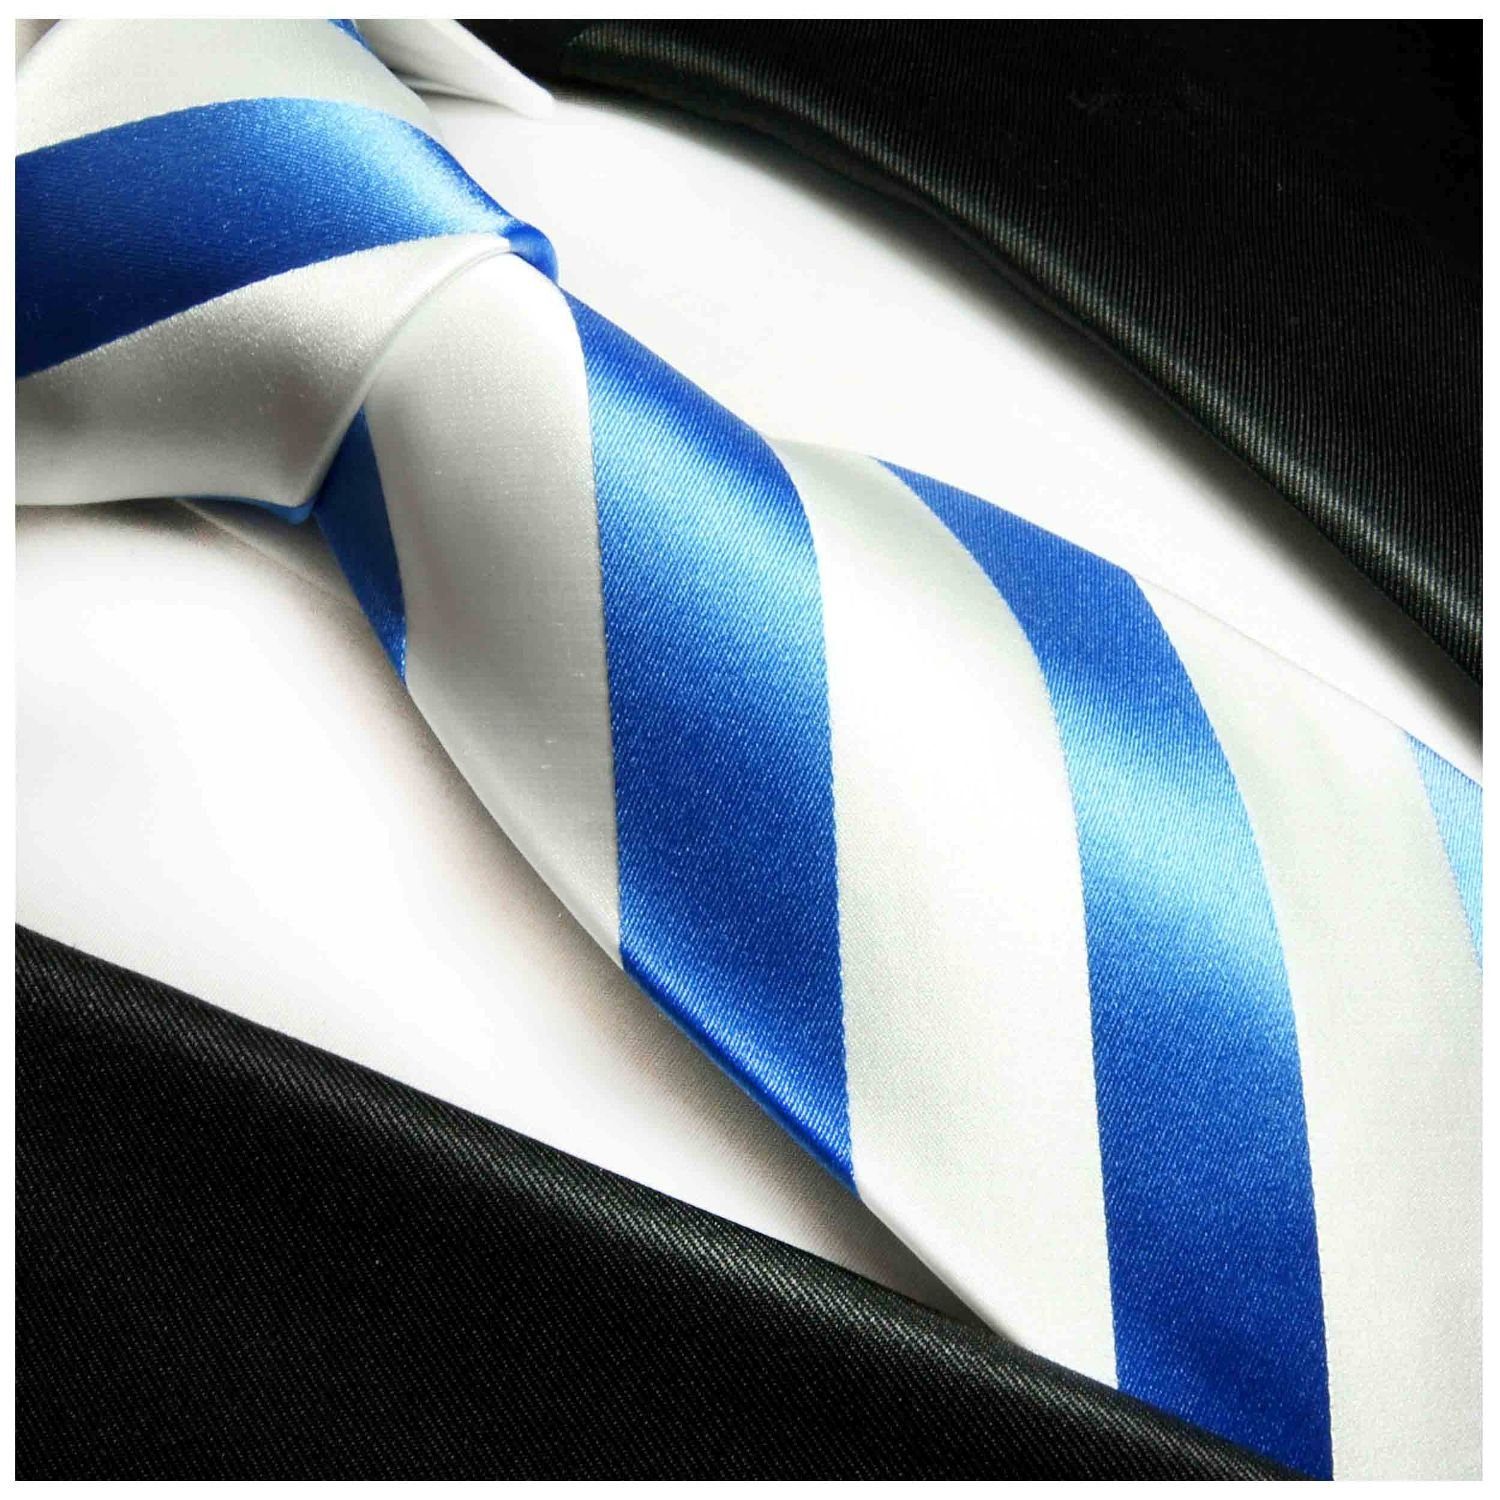 Paul Malone (Set, Krawatte 413 Schmal Seidenkrawatte mit mit Einstecktuch) 2-St., (6cm), modern Herren hellblau Streifen Seide Tuch Krawatte gestreift weiß 100